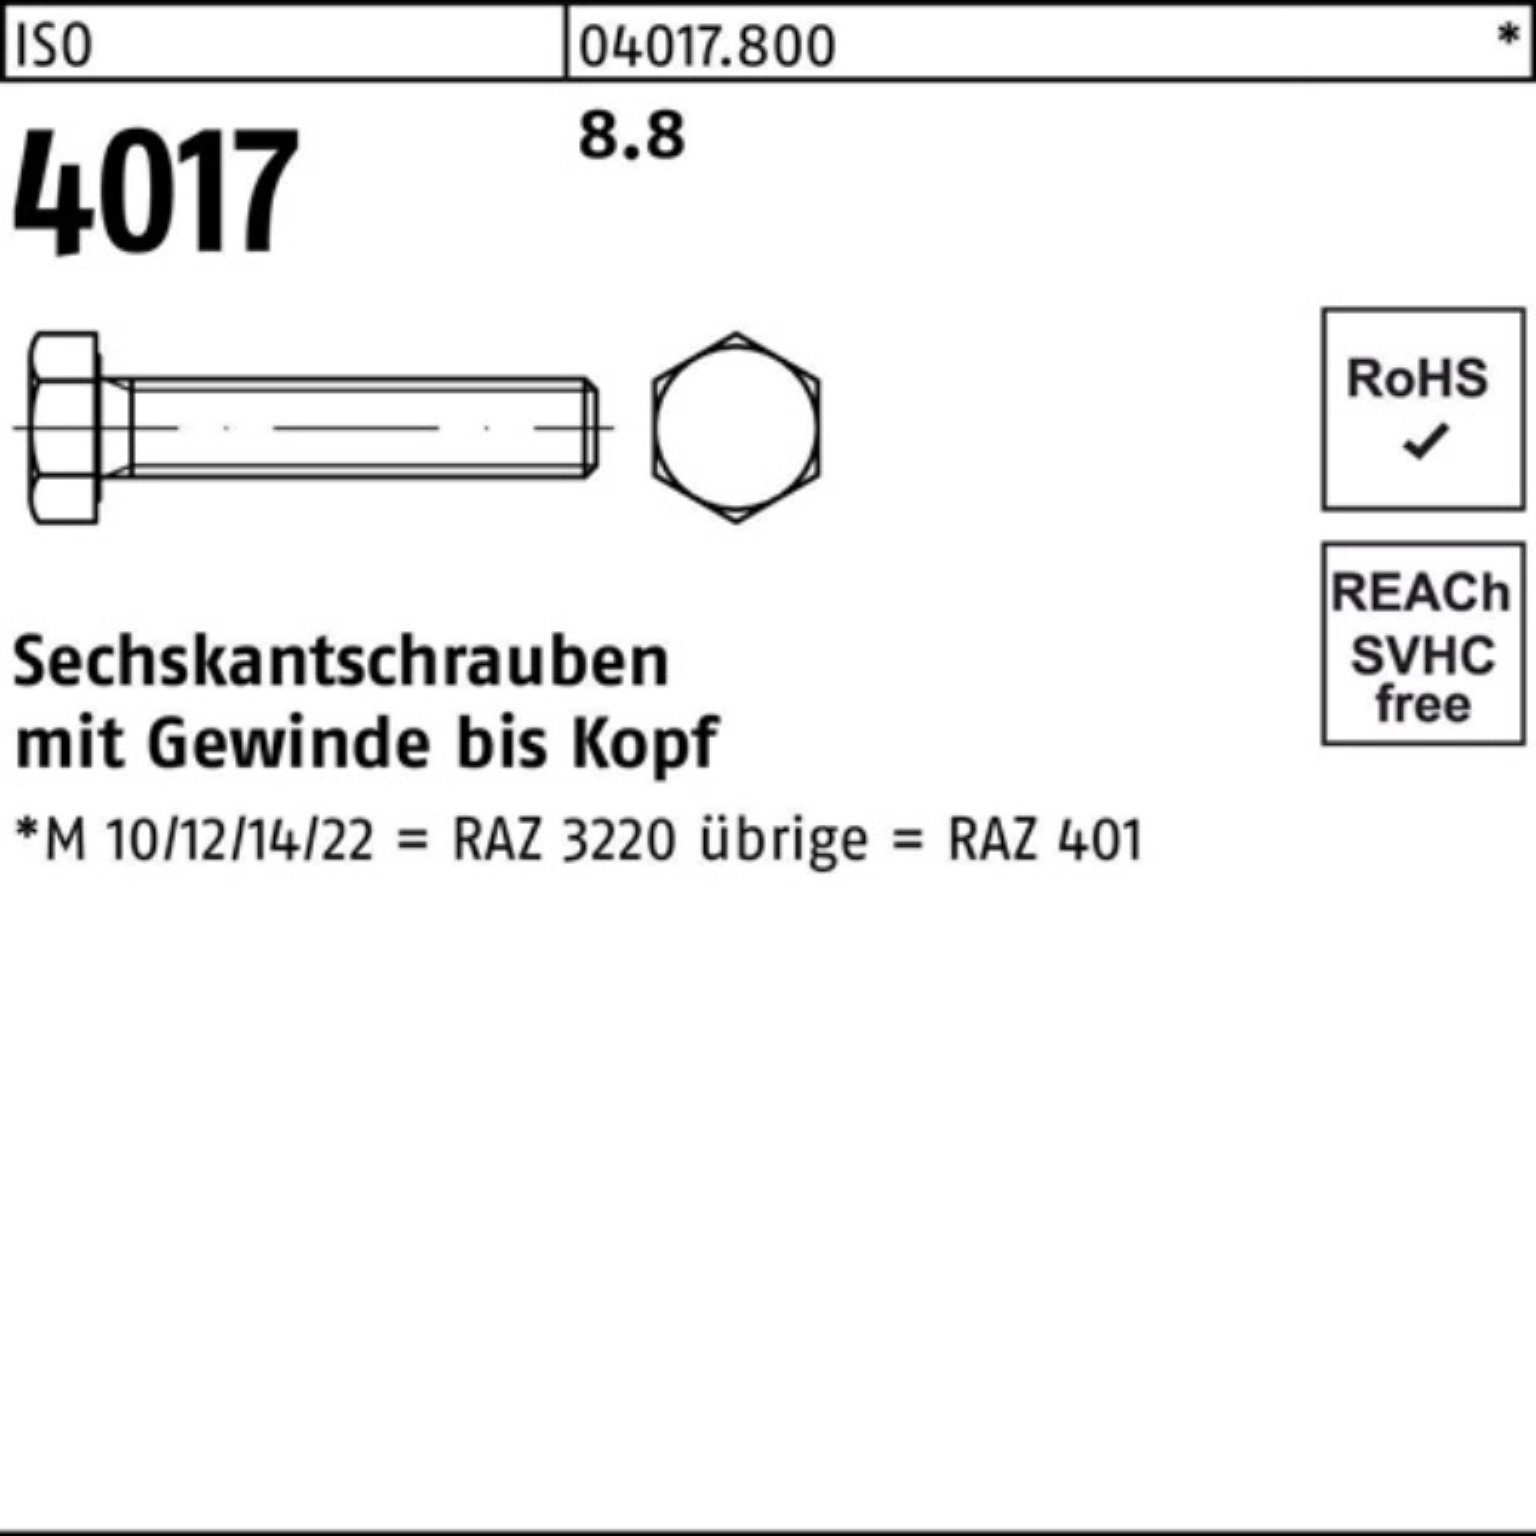 ISO Pack VG Bufab ISO Sechskantschraube M4x 100er 6 8.8 4017 Sechskantschraube 4017 100 Stück